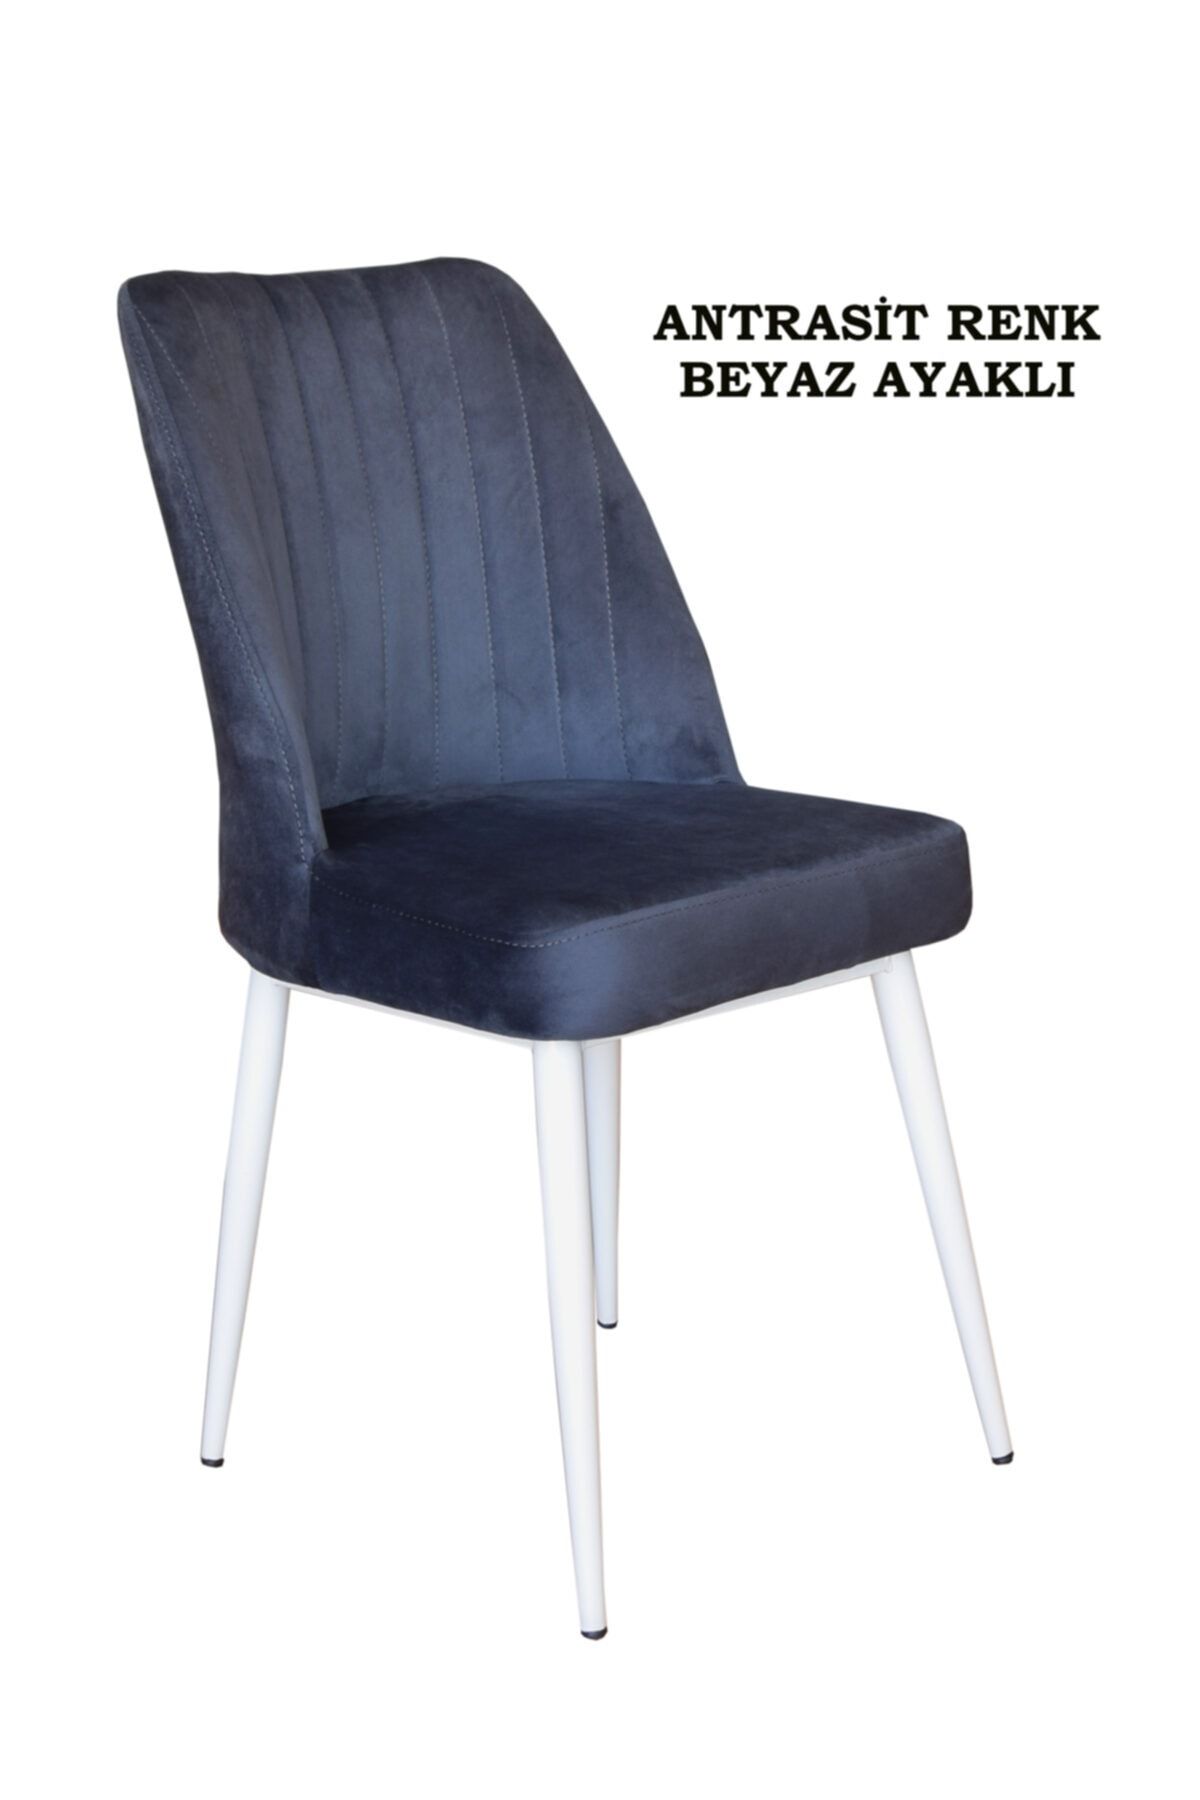 Ankhira Elit Sandalye, Mutfak Ve Salon Sandalyesi, Silinebilir Antrasit Renk Kumaş, Beyaz Ayaklı